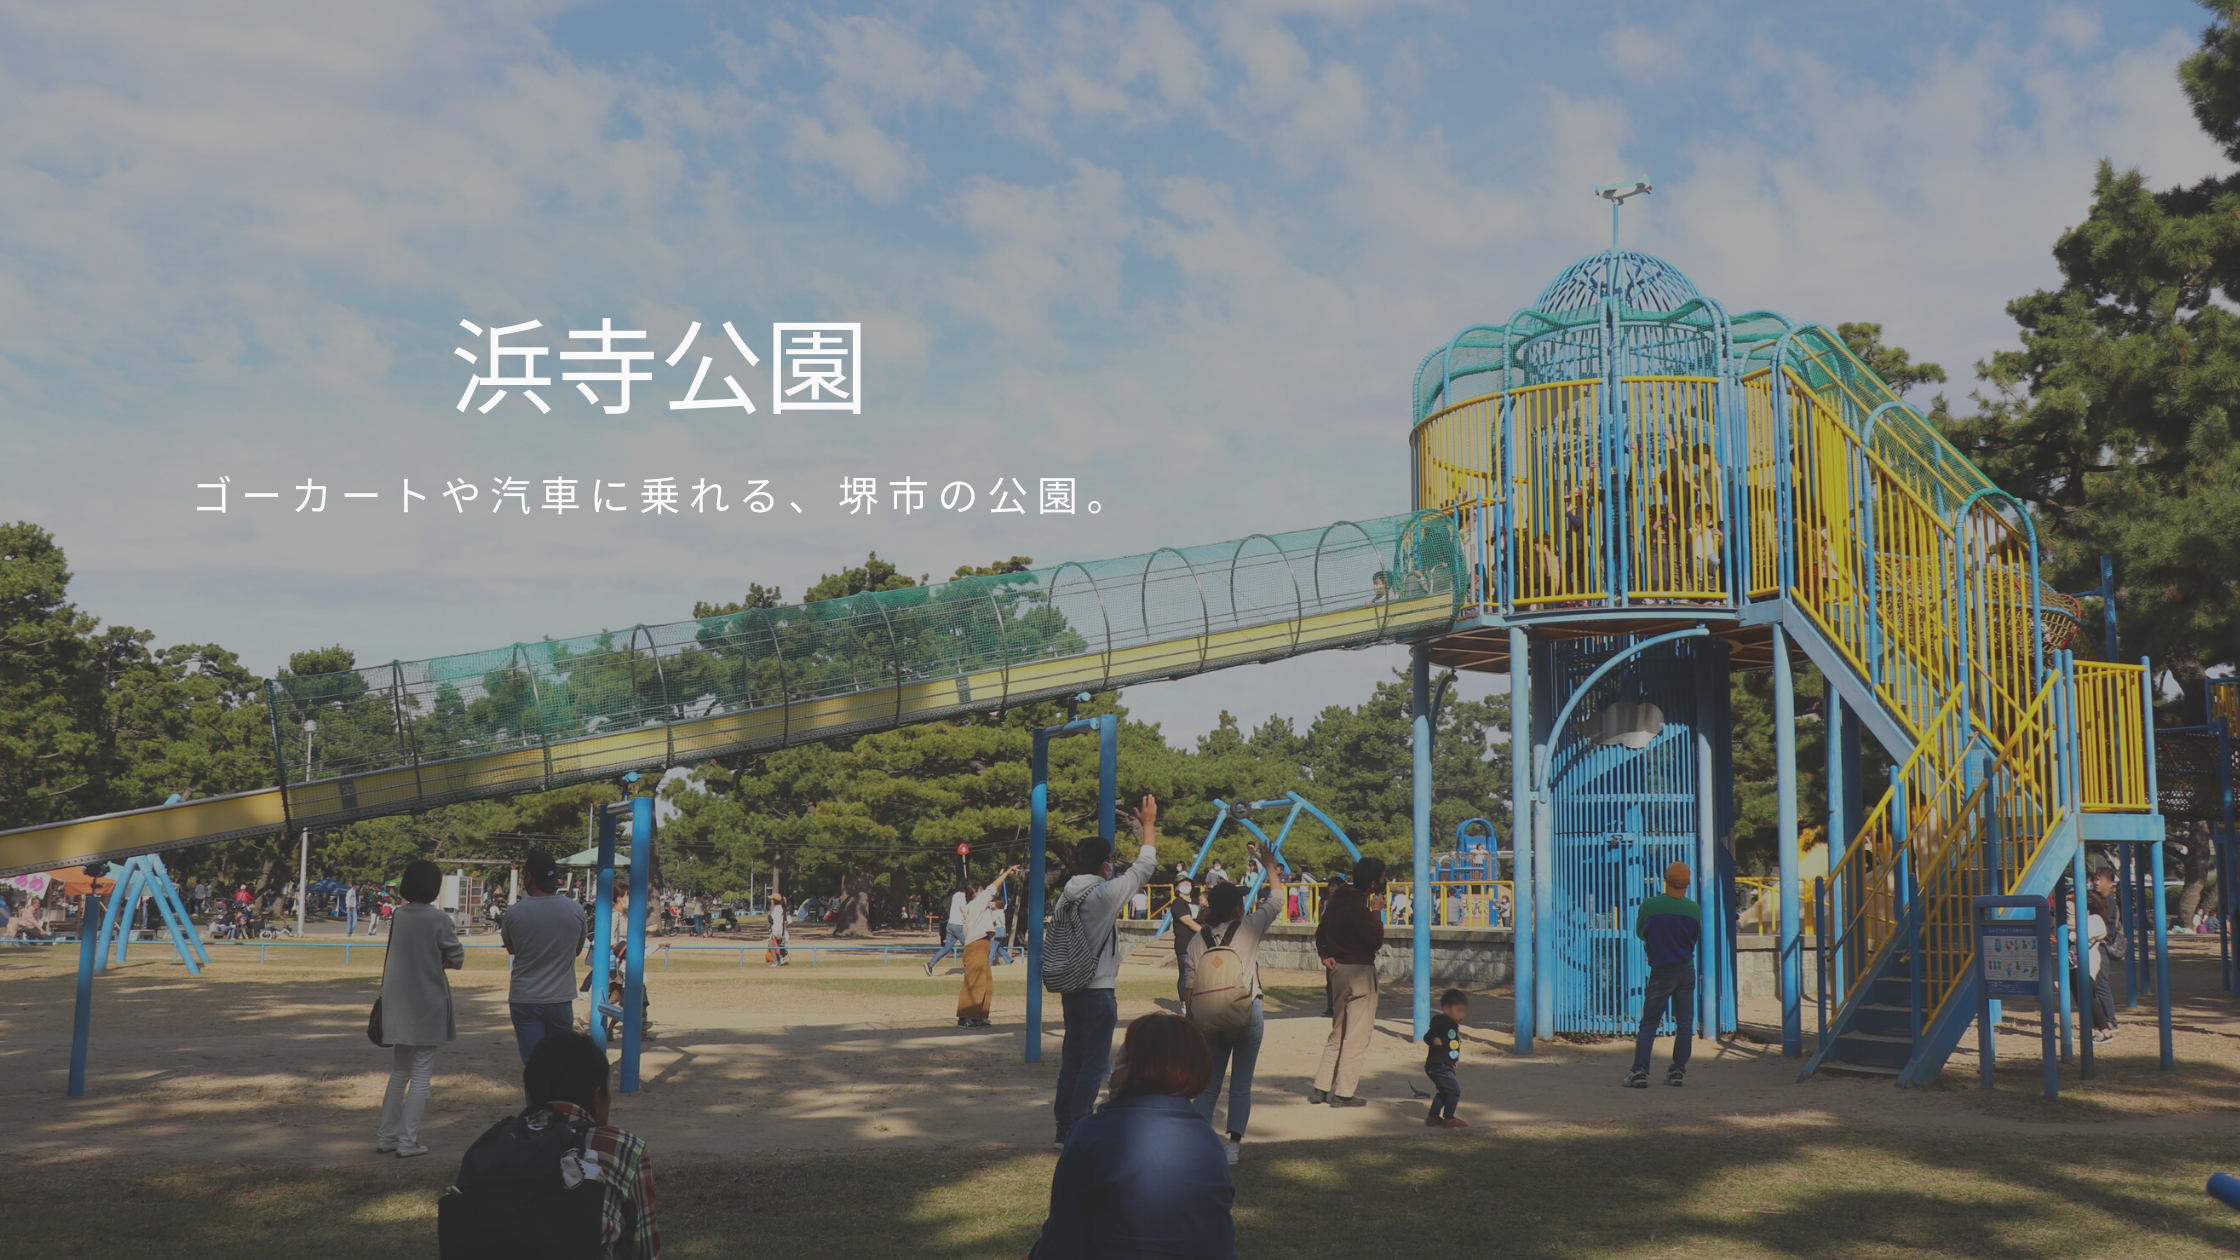 堺市 無料bbq ゴーカート 大型遊具で一日遊べる 浜寺公園 へ行って来ました 北摂てくてく